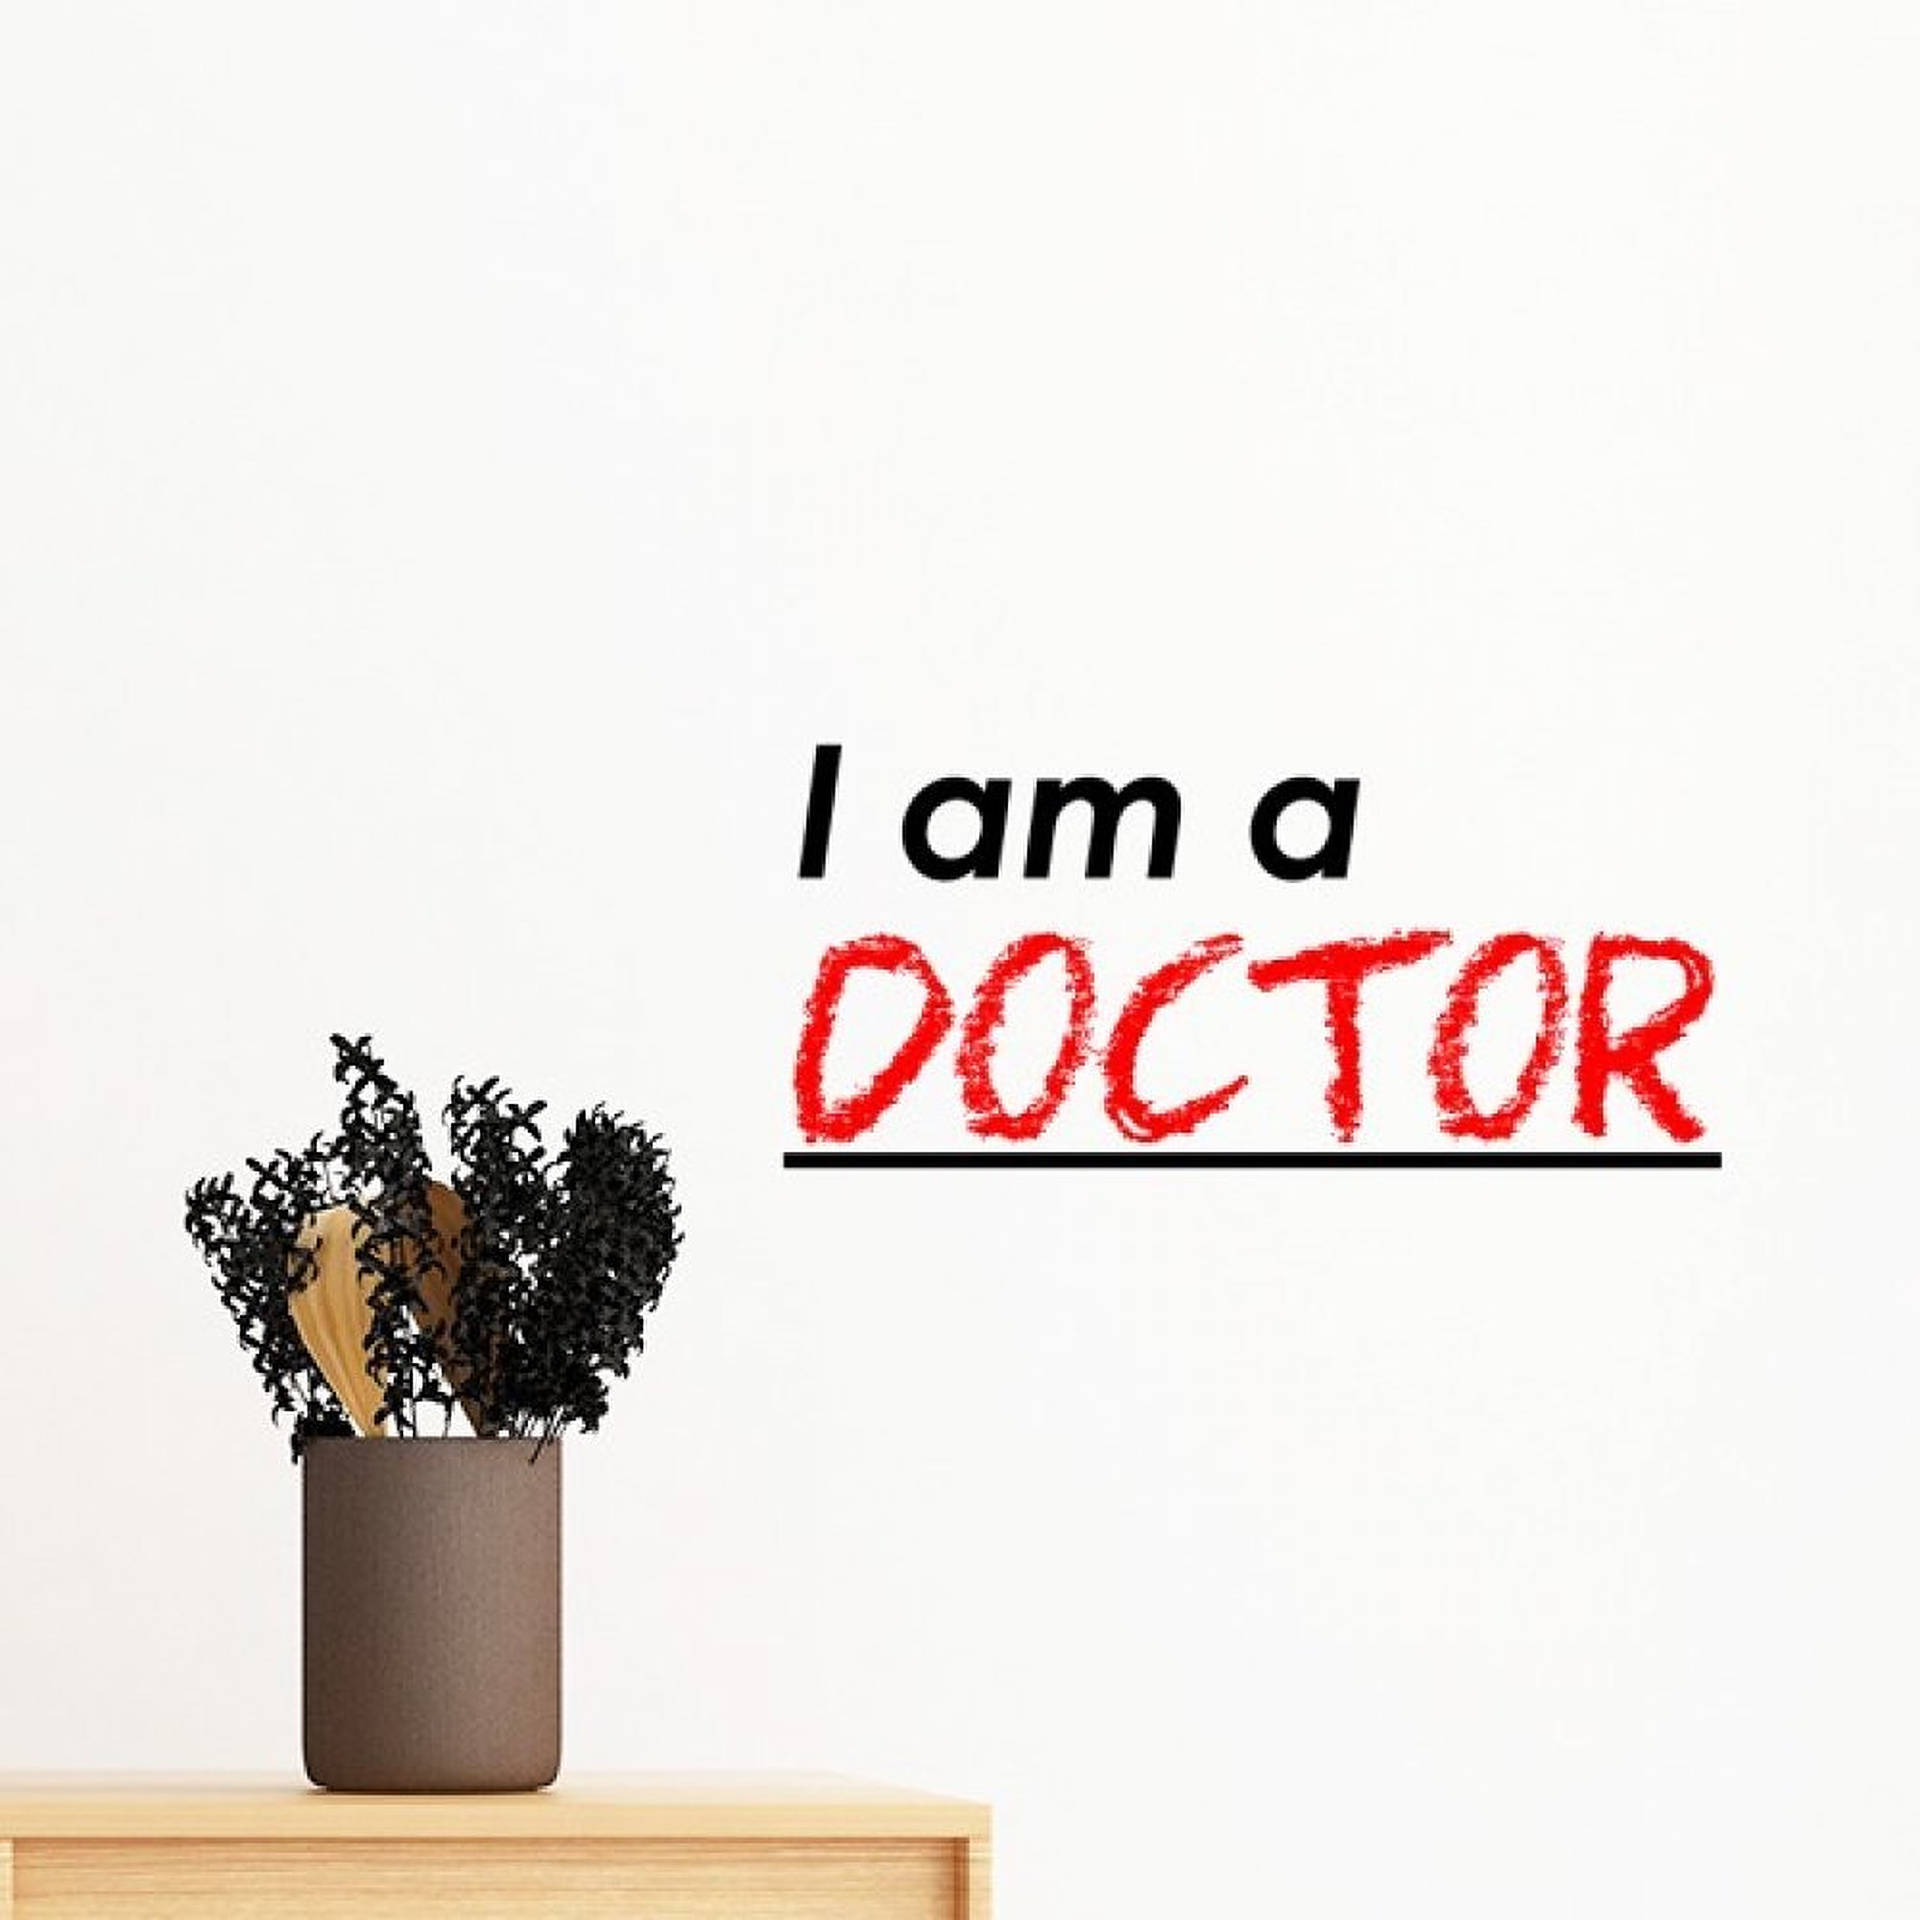 I am A Doctor wallpaper